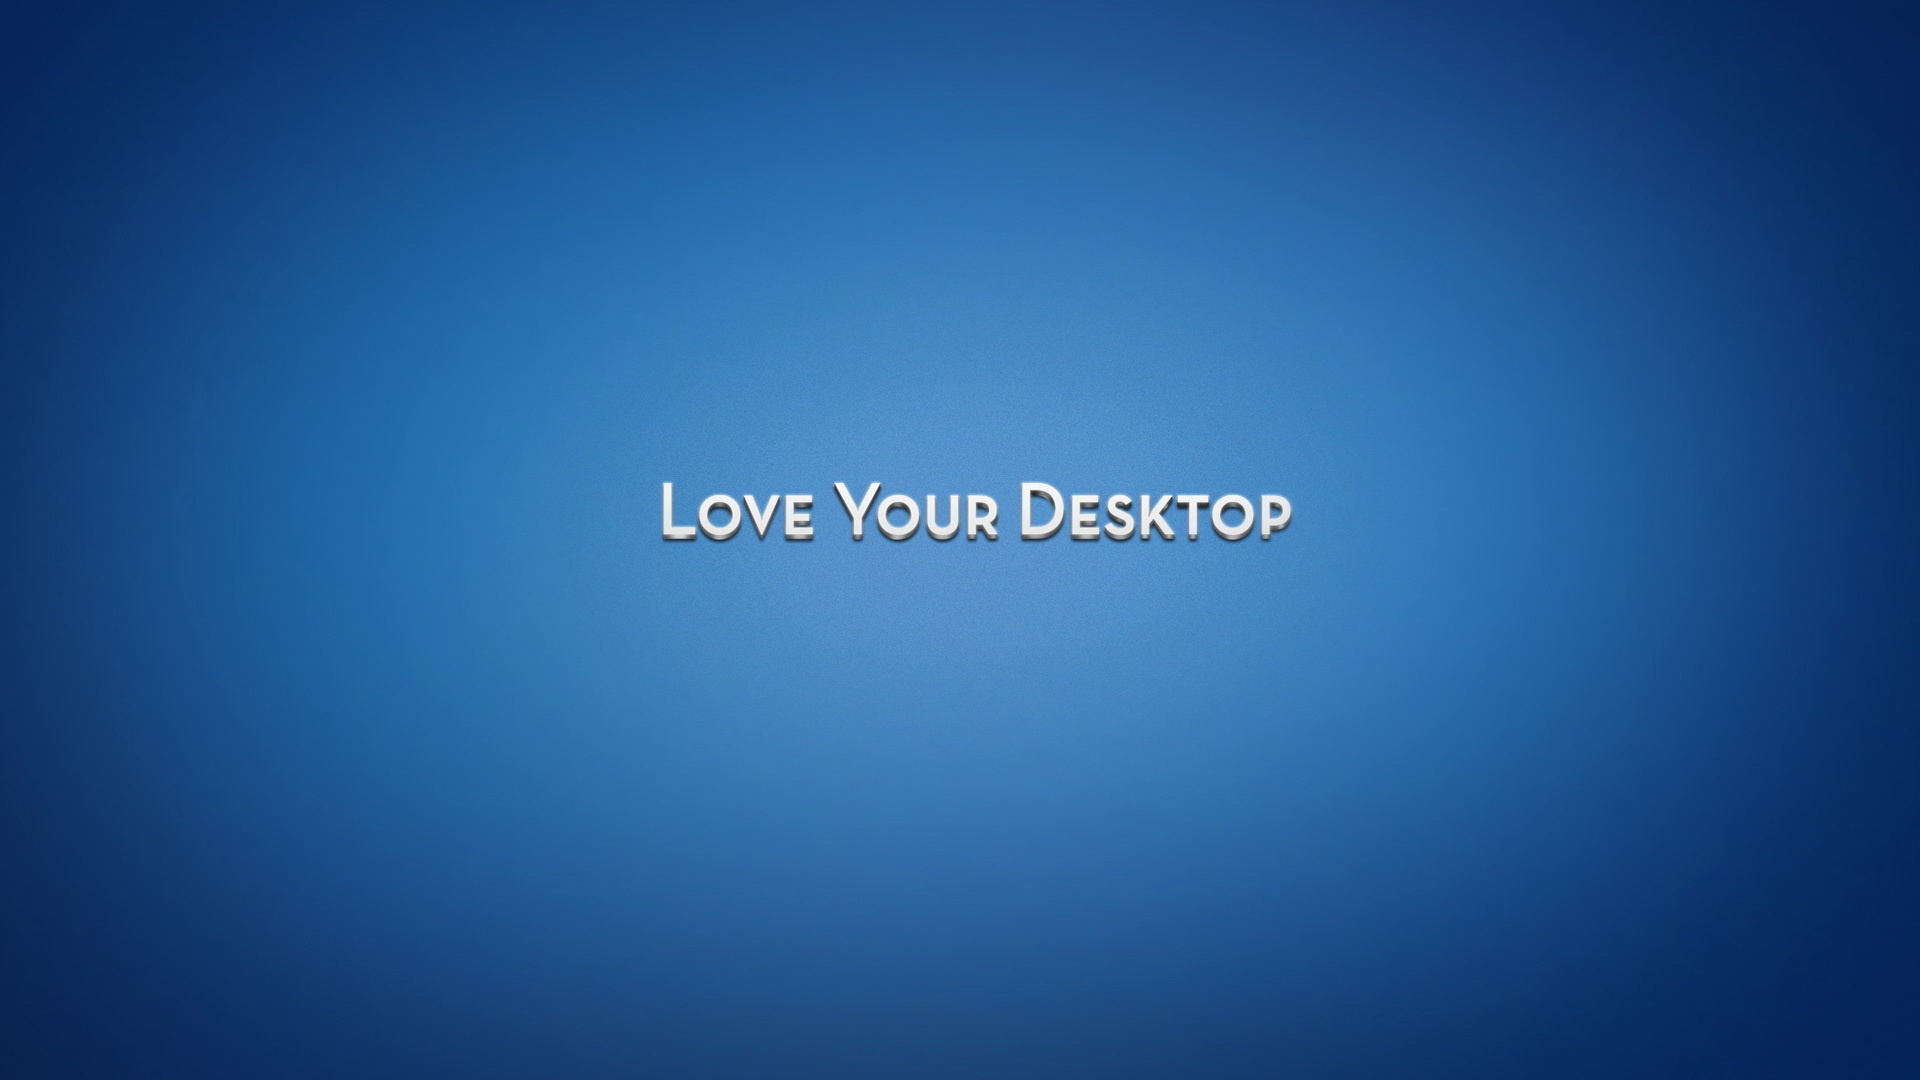 Love Your Desktop 1080p Full HD Wallpaper